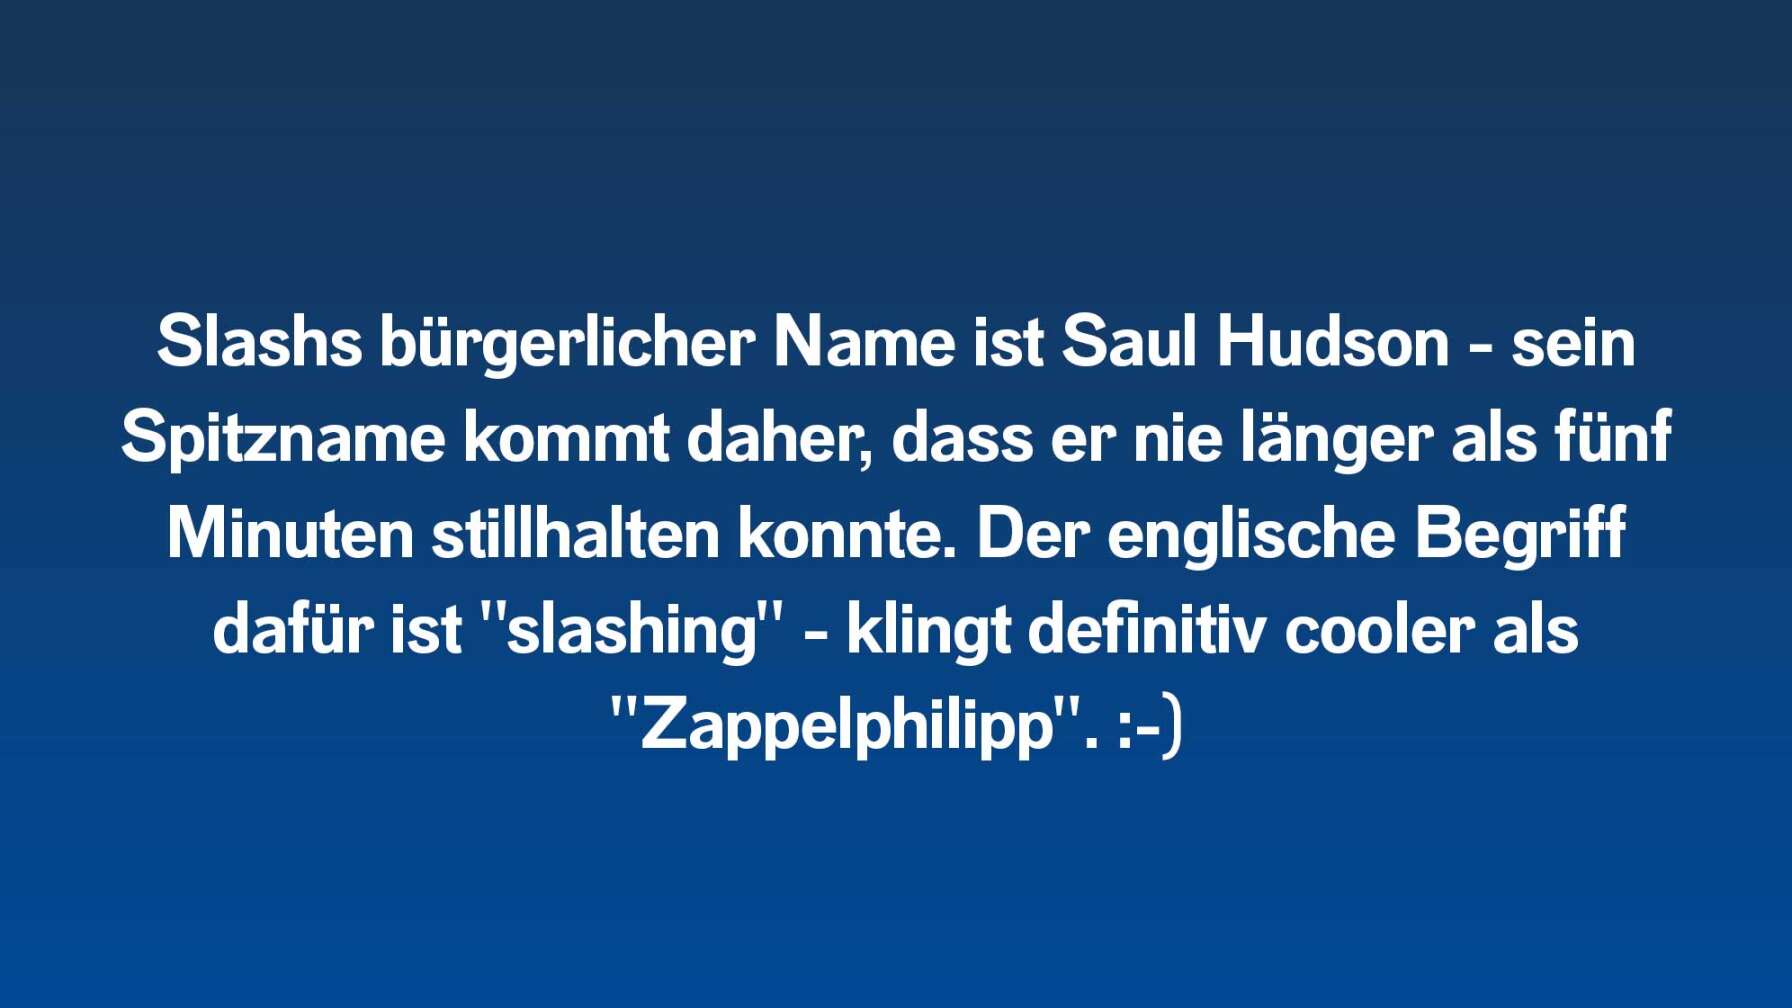 Slashs bürgerlicher Name ist Saul Hudson - sein Spitzname kommt daher, dass er nie länger als fünf Minuten stillhalten konnte. Der englische Begriff dafür ist "slashing" - klingt definitiv cooler als "Zappelphilipp". :-)